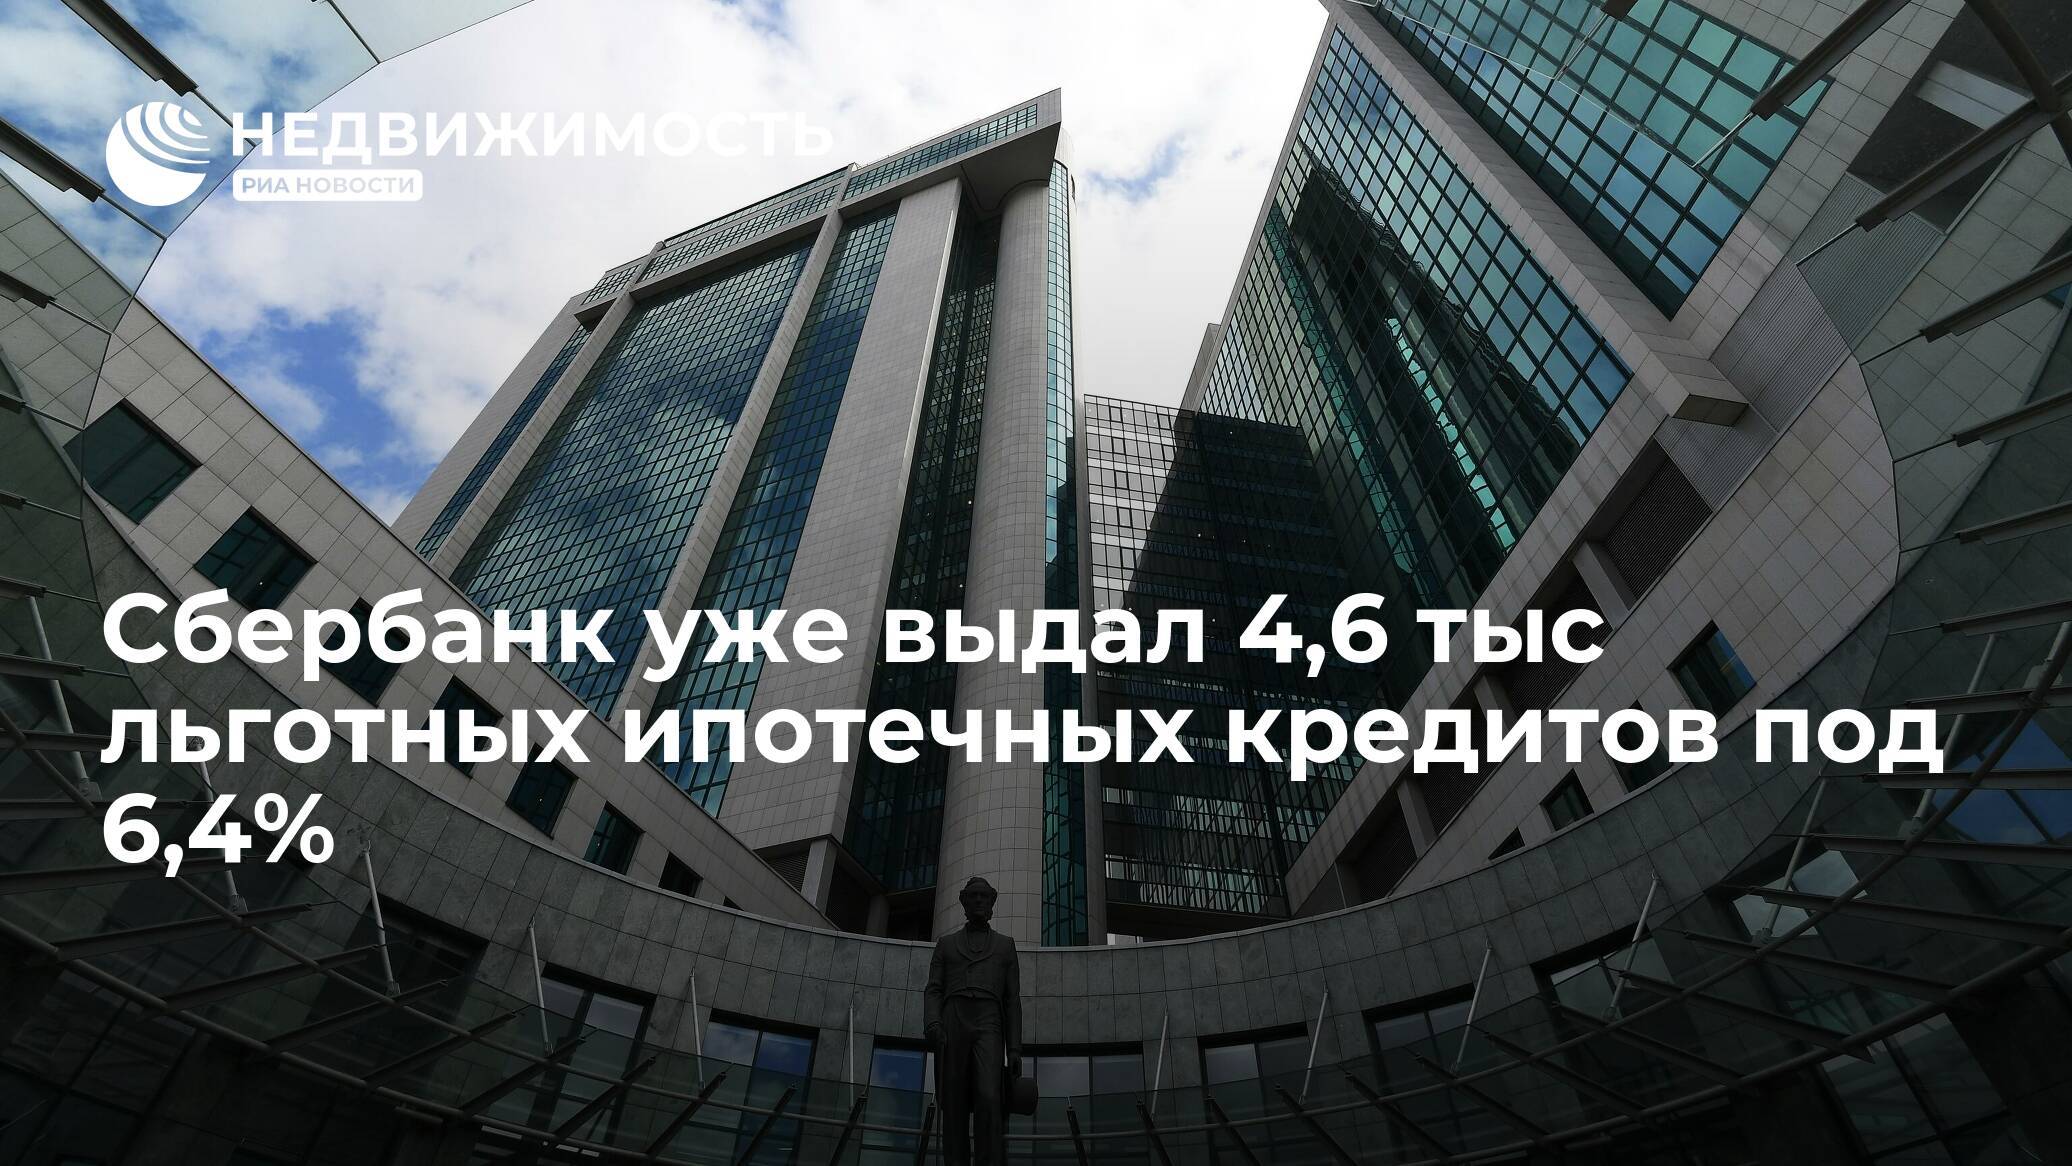 В нижегородской области упрощен порядок предоставления региональной льготной ипотеки - арзамасcкие новости